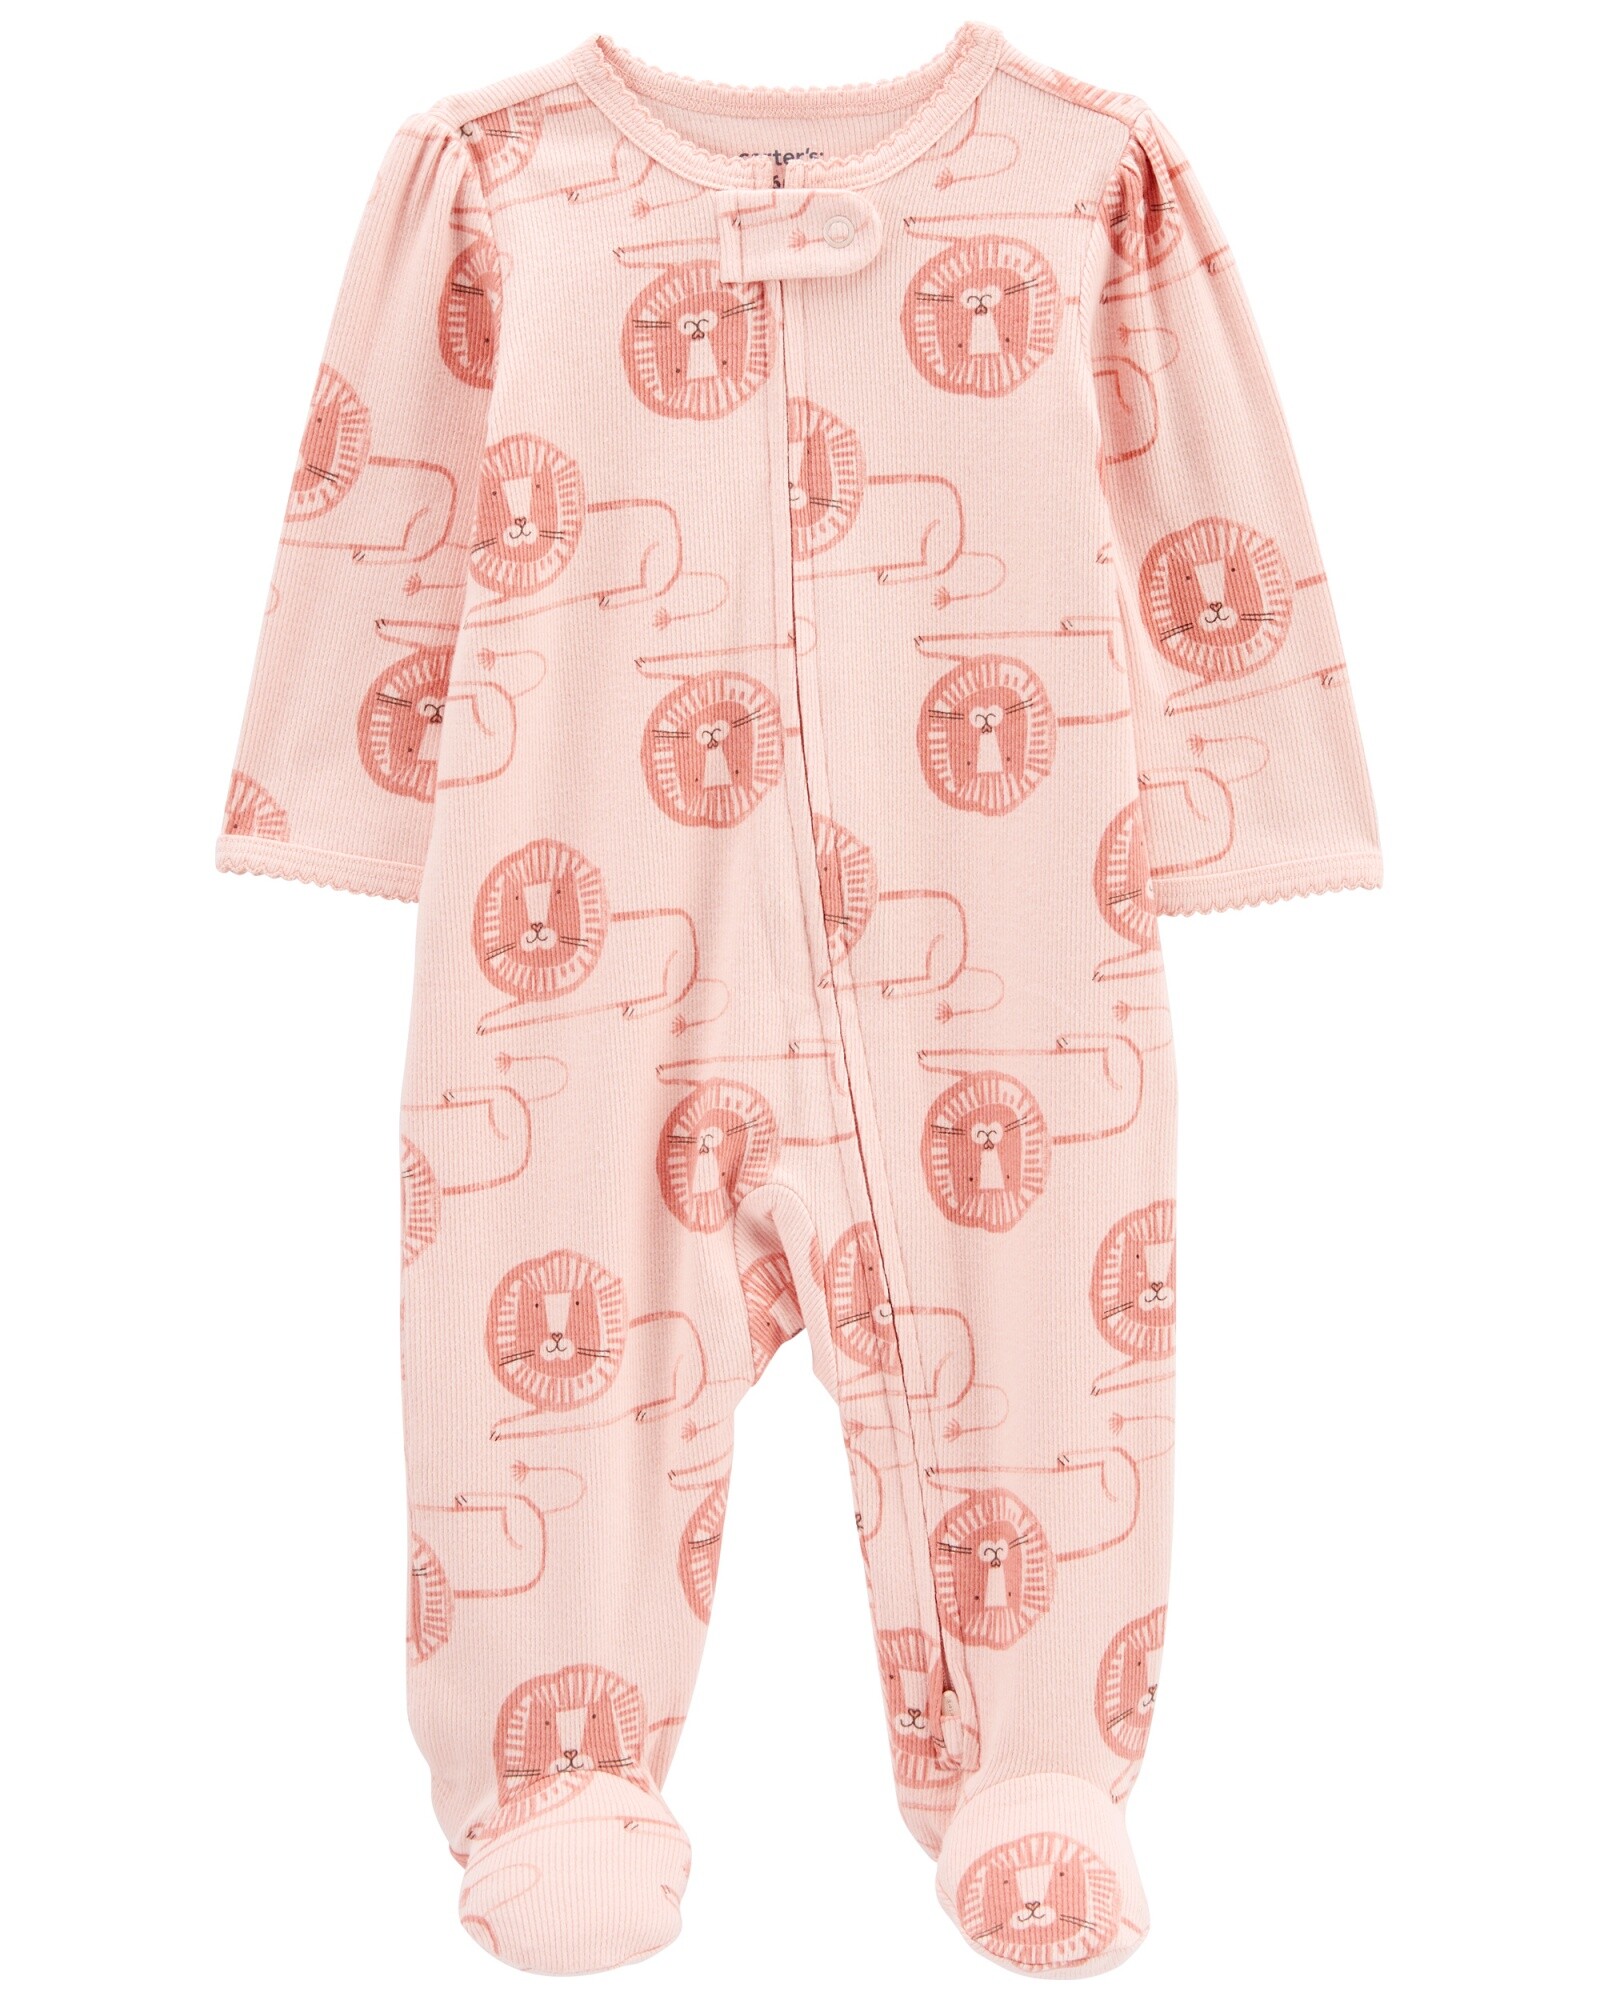 Pijama una pieza de algodón texturado, con pie, diseño león Sin color